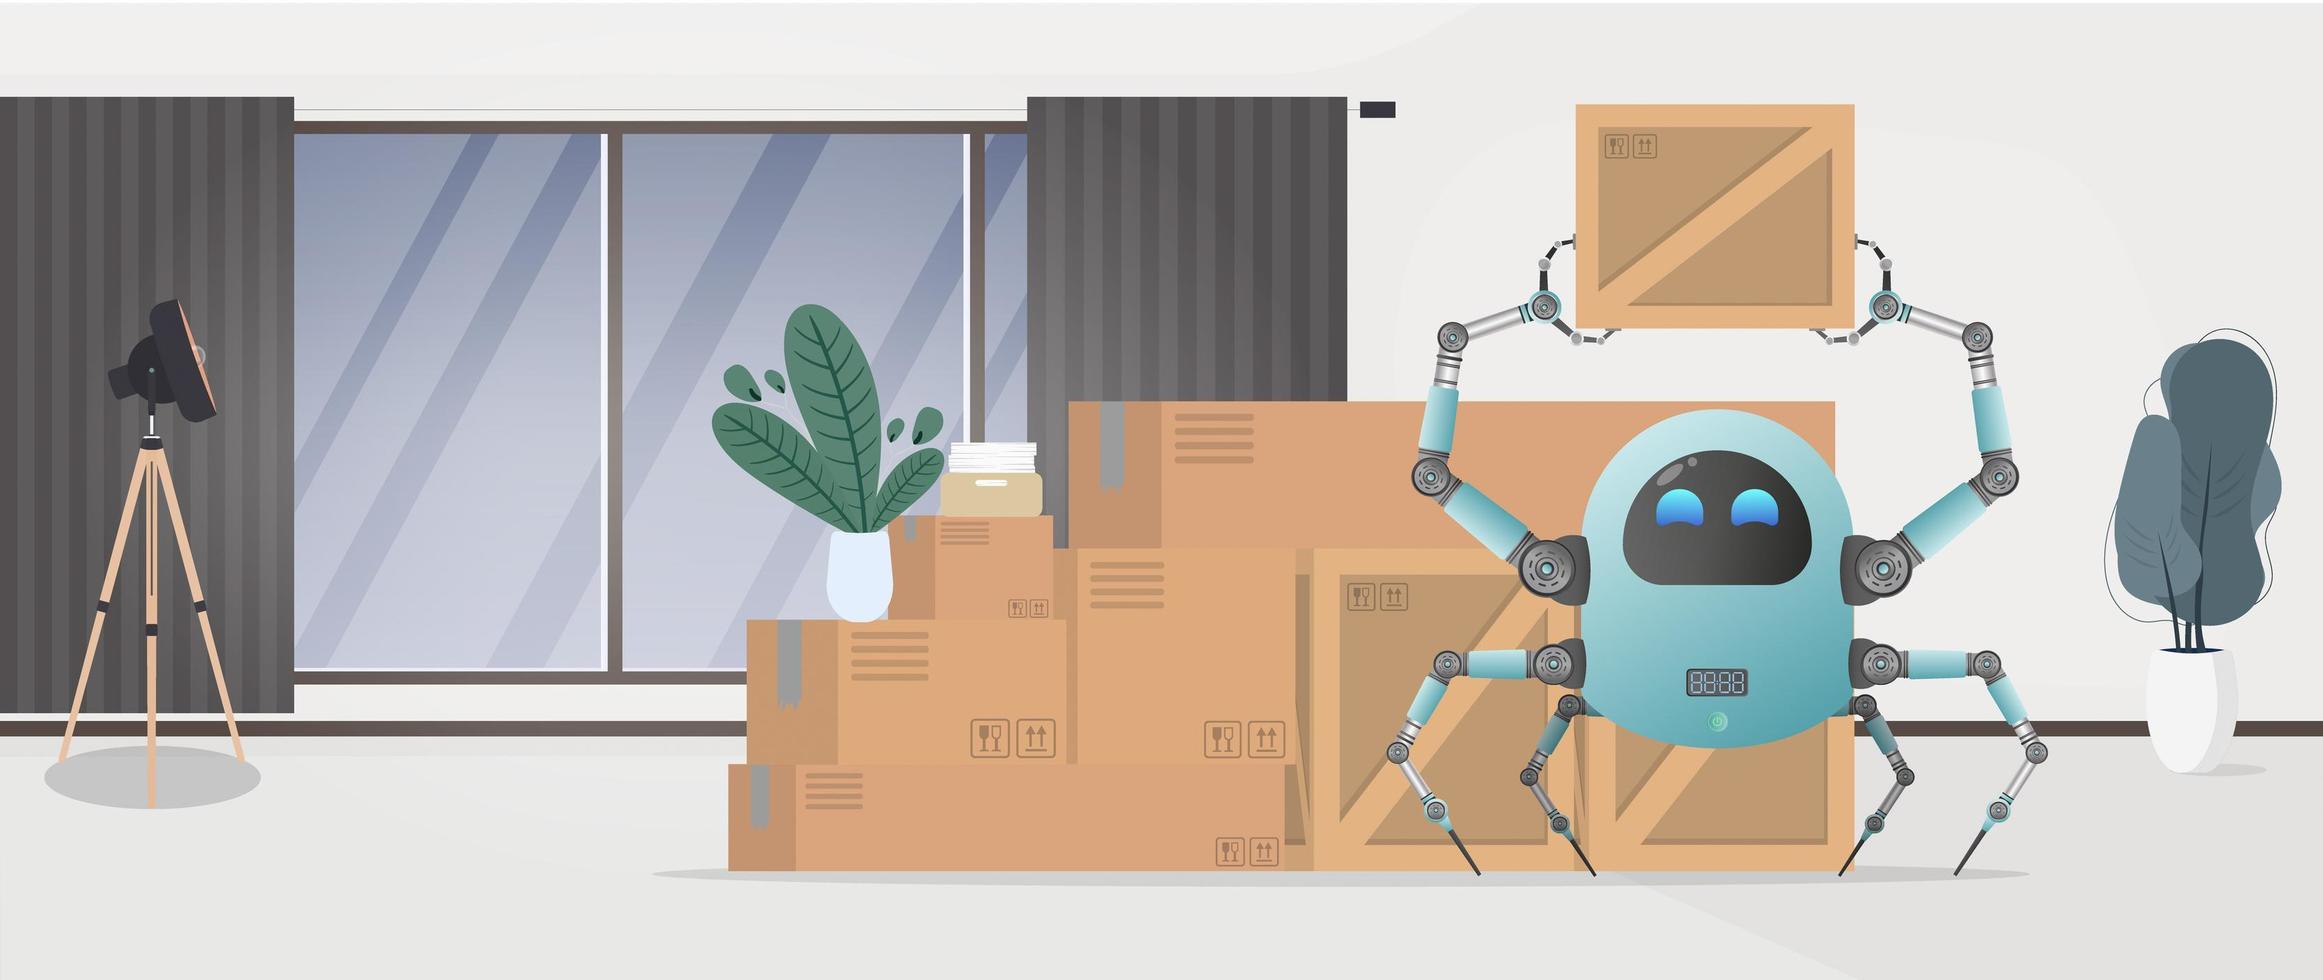 trasloco a casa o in ufficio. un piccolo robot futuristico tiene in mano una scatola. stile cartone animato. illustrazione vettoriale. vettore